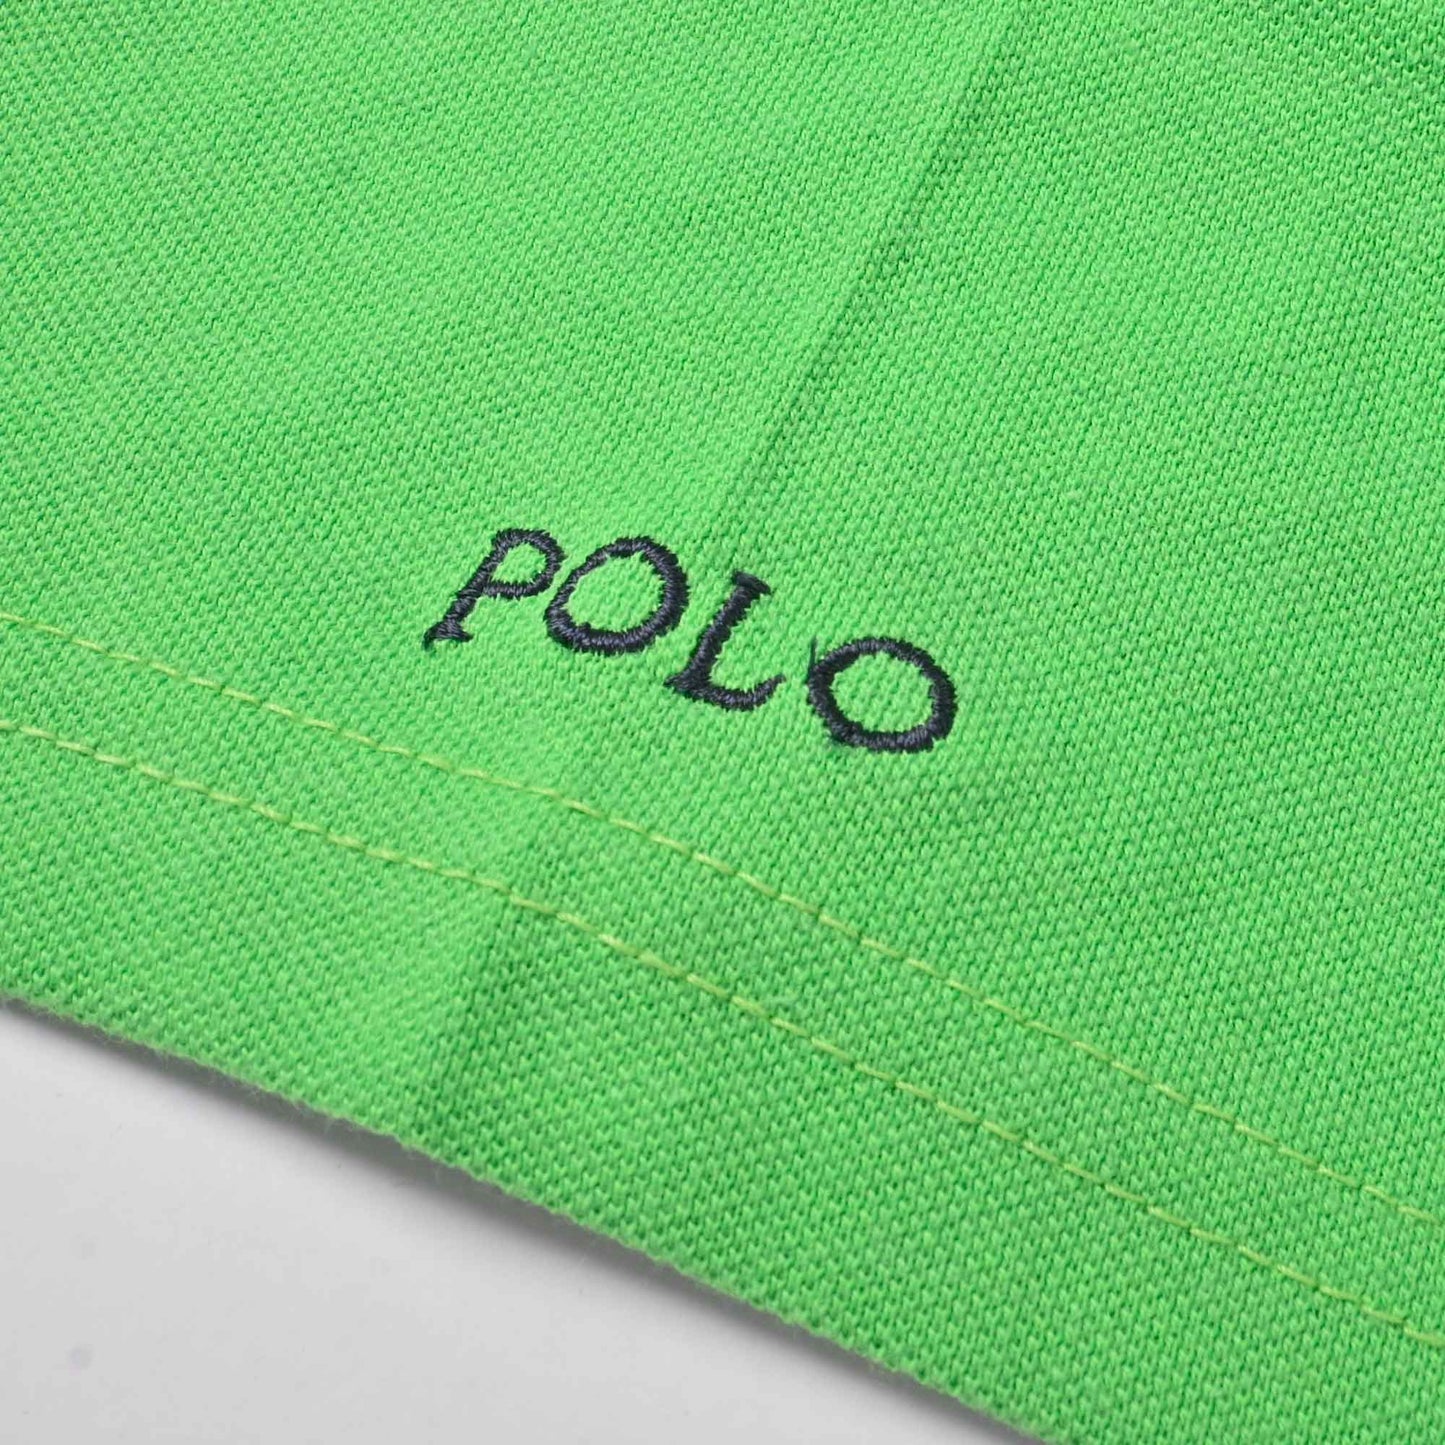 Polo Republica Men's Double Pony Polo & 5 Embroidered Pocket Polo Shirt Men's Polo Shirt Polo Republica 